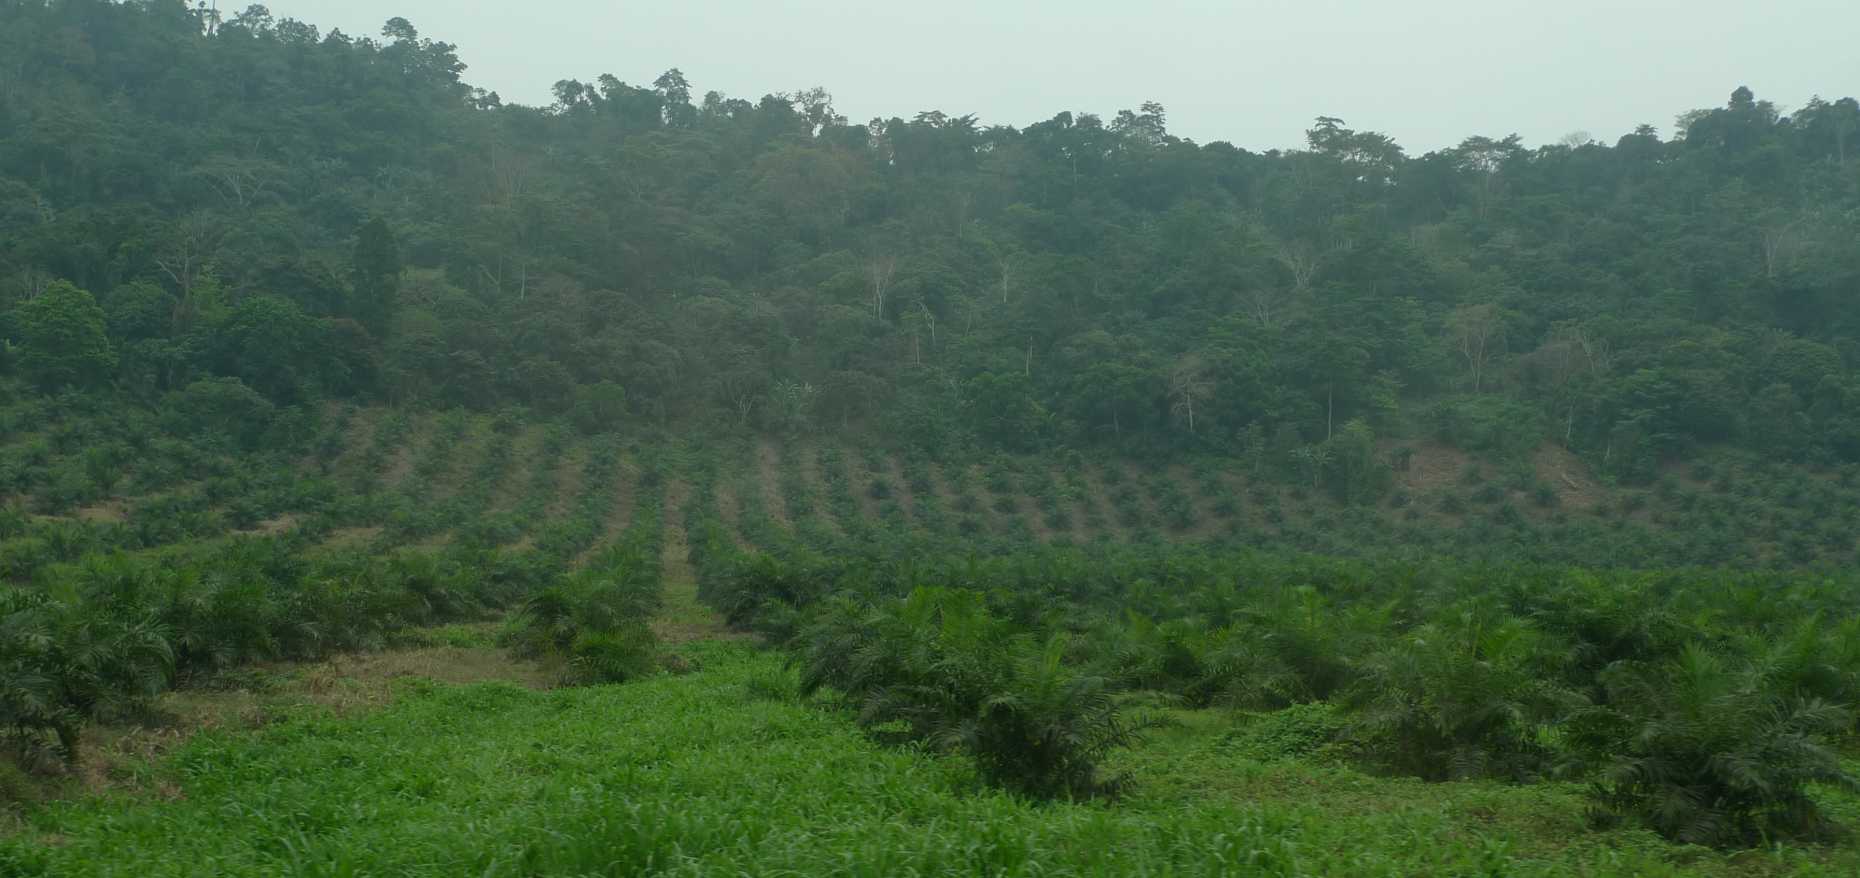 Vergrösserte Ansicht: Oil-palm plantation in Cameroon 